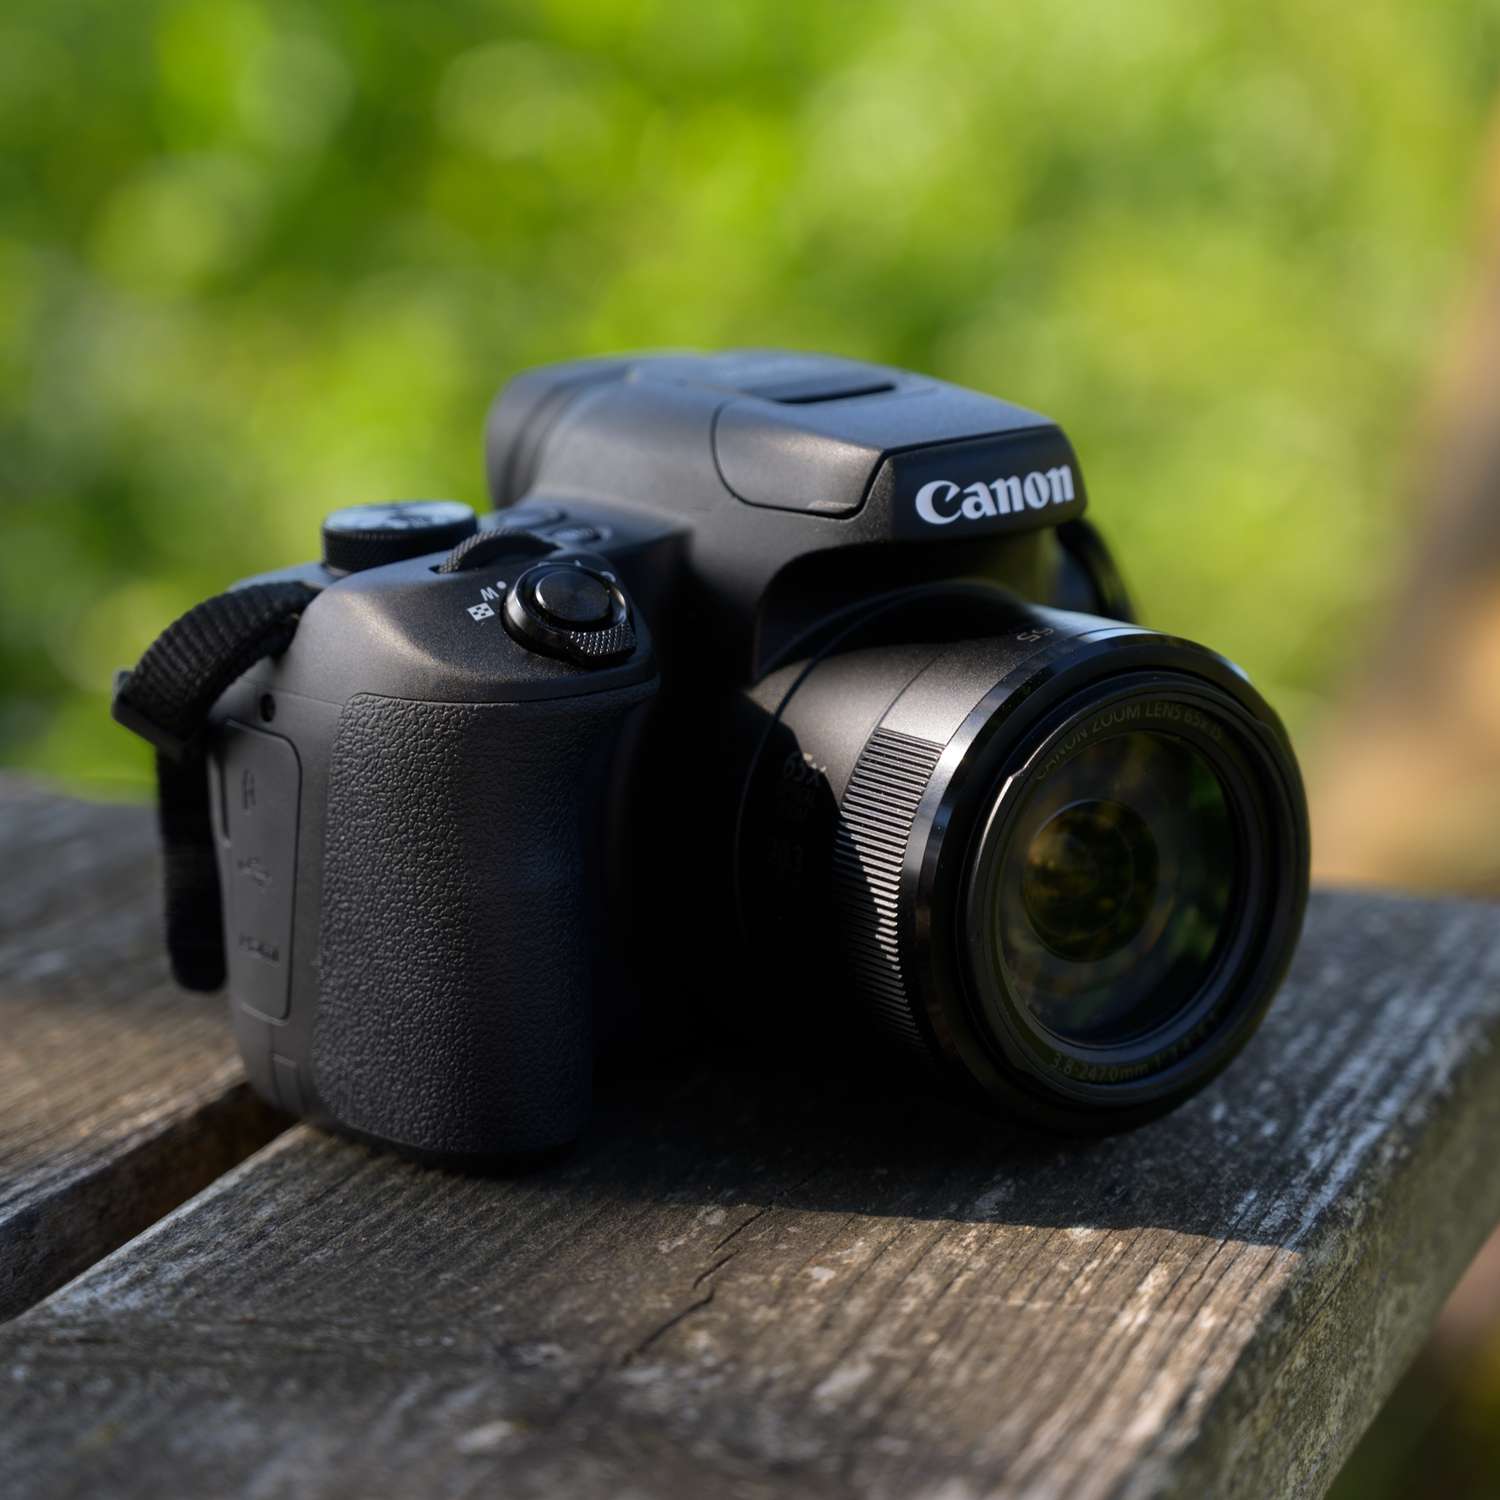 Canon PowerShot SX70 HS : un appareil photo compact avec un énorme zoom